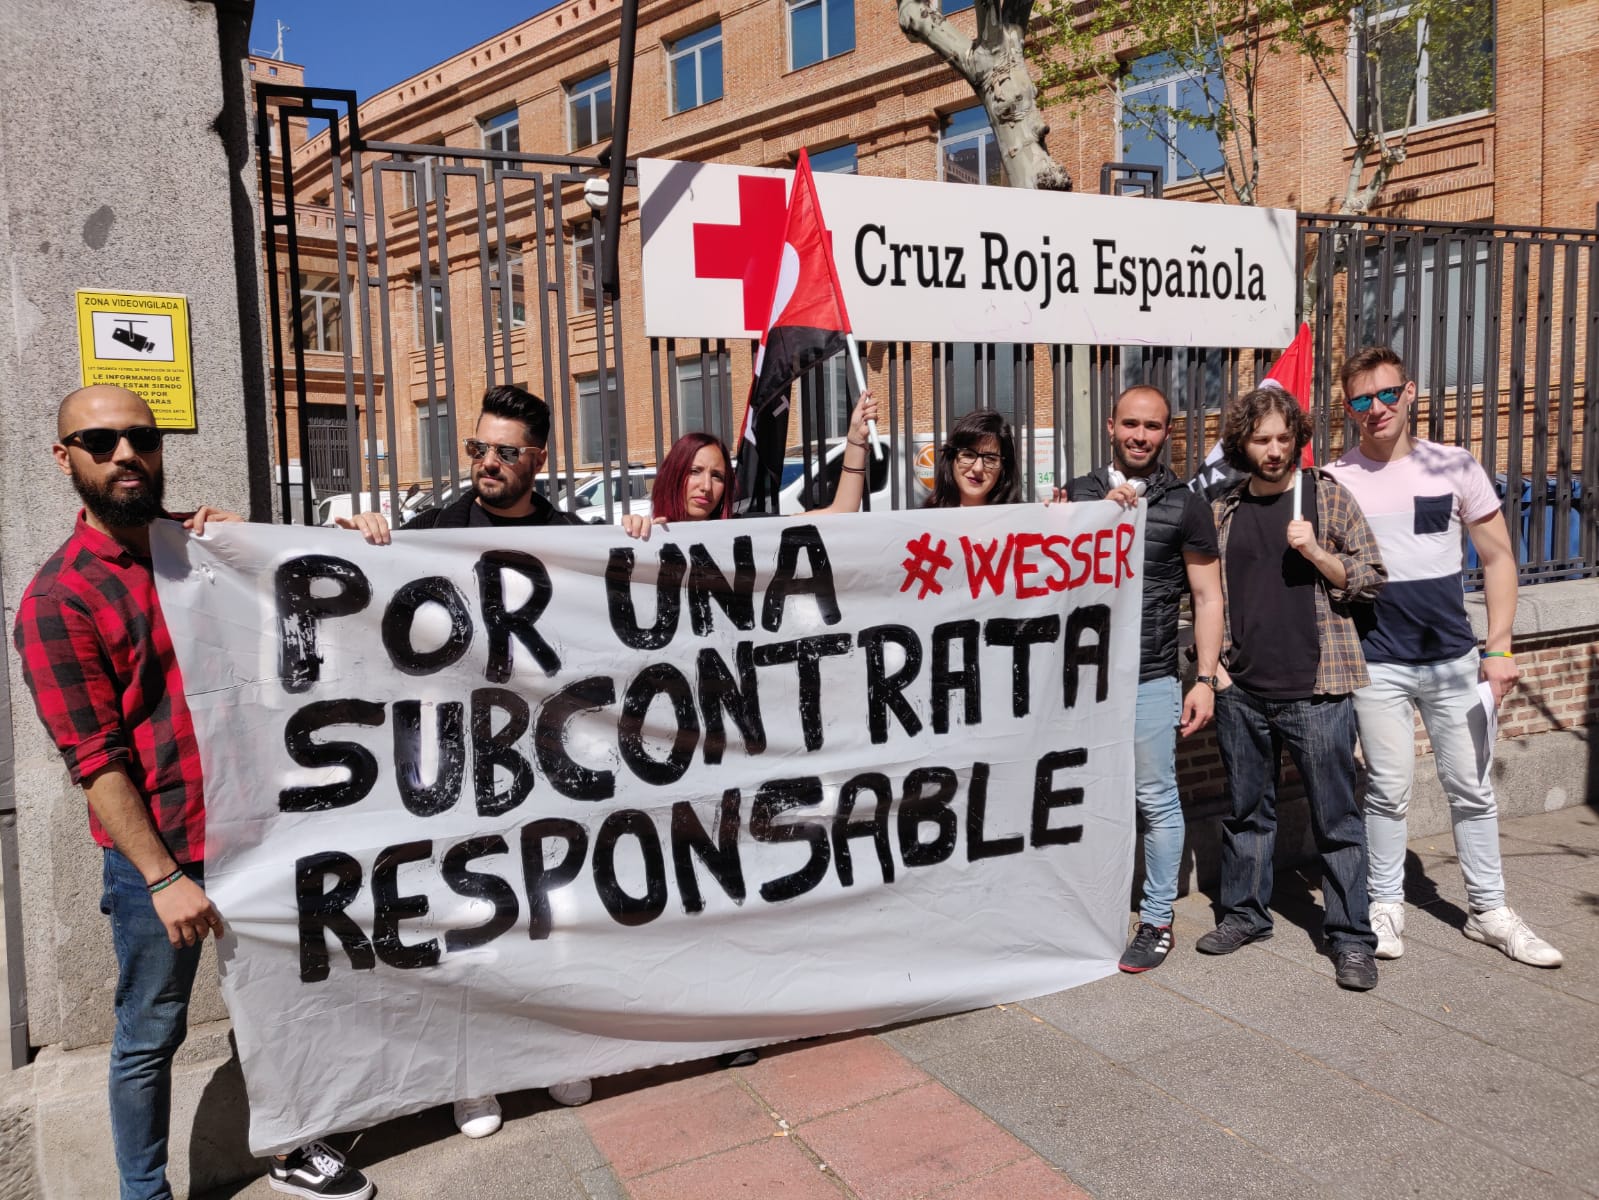 Tocando la puerta de Cruz Roja Española